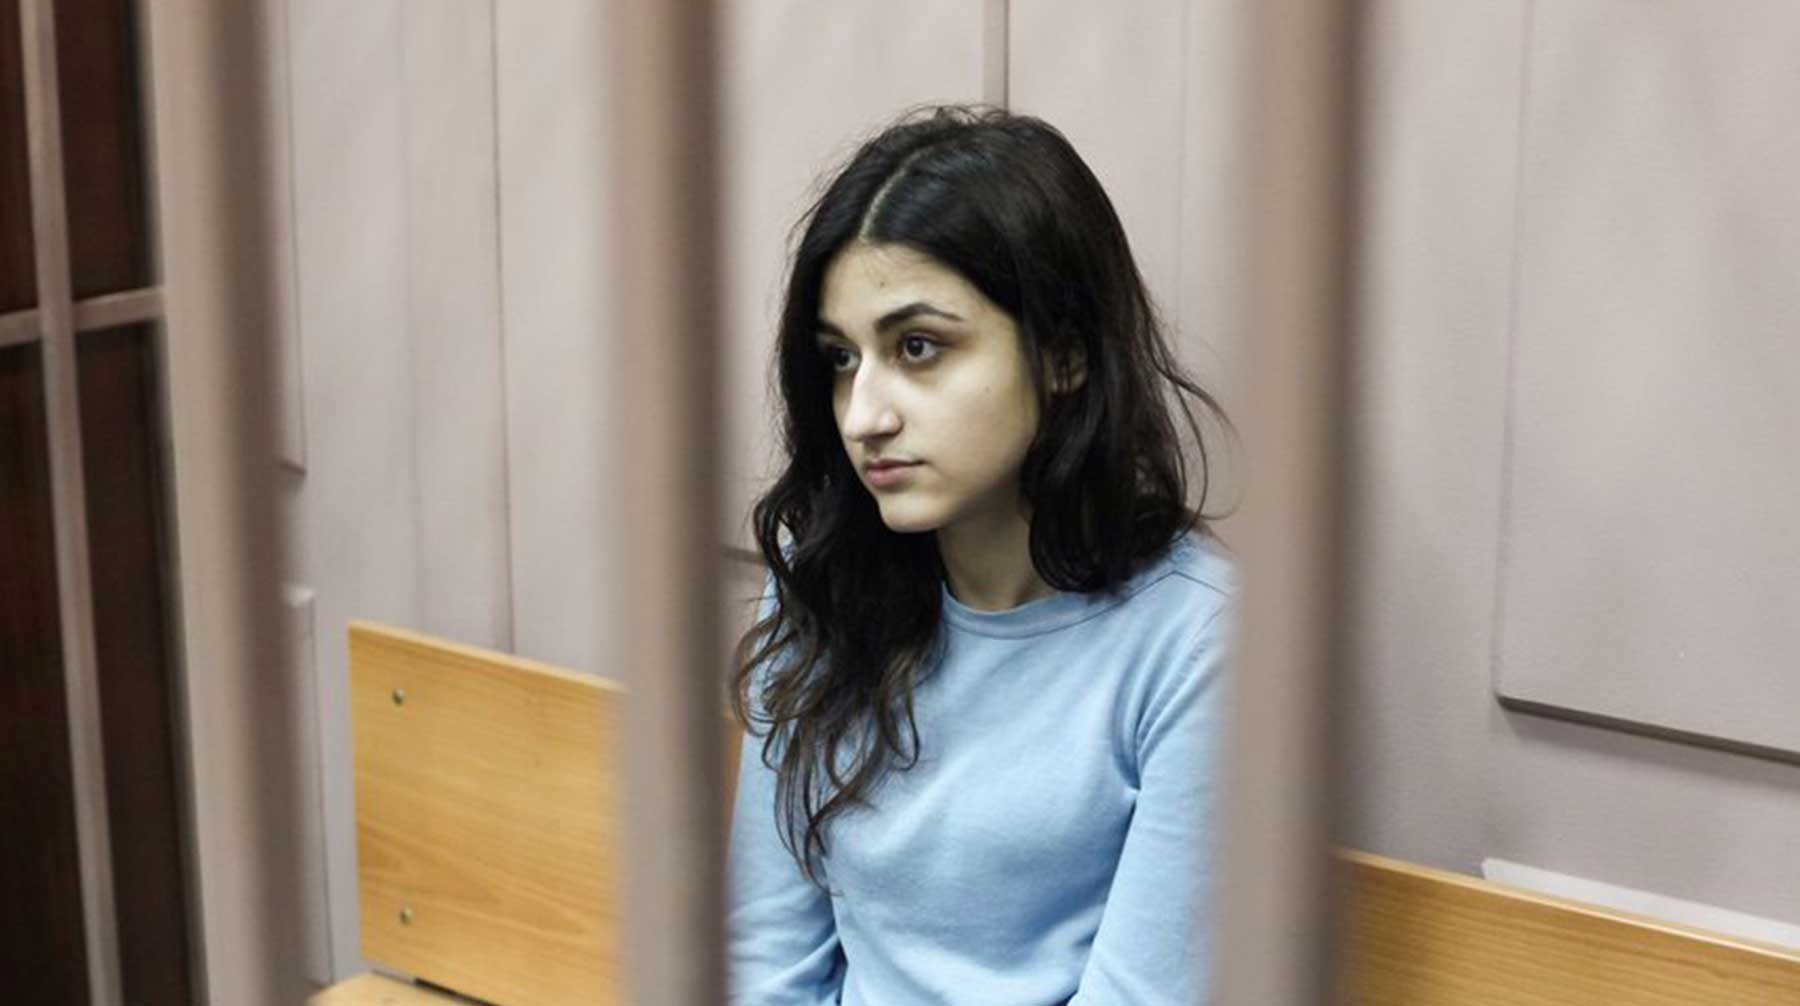 Адвокаты девушек будут добиваться признания их подзащитных потерпевшими Крестина Хачатурян